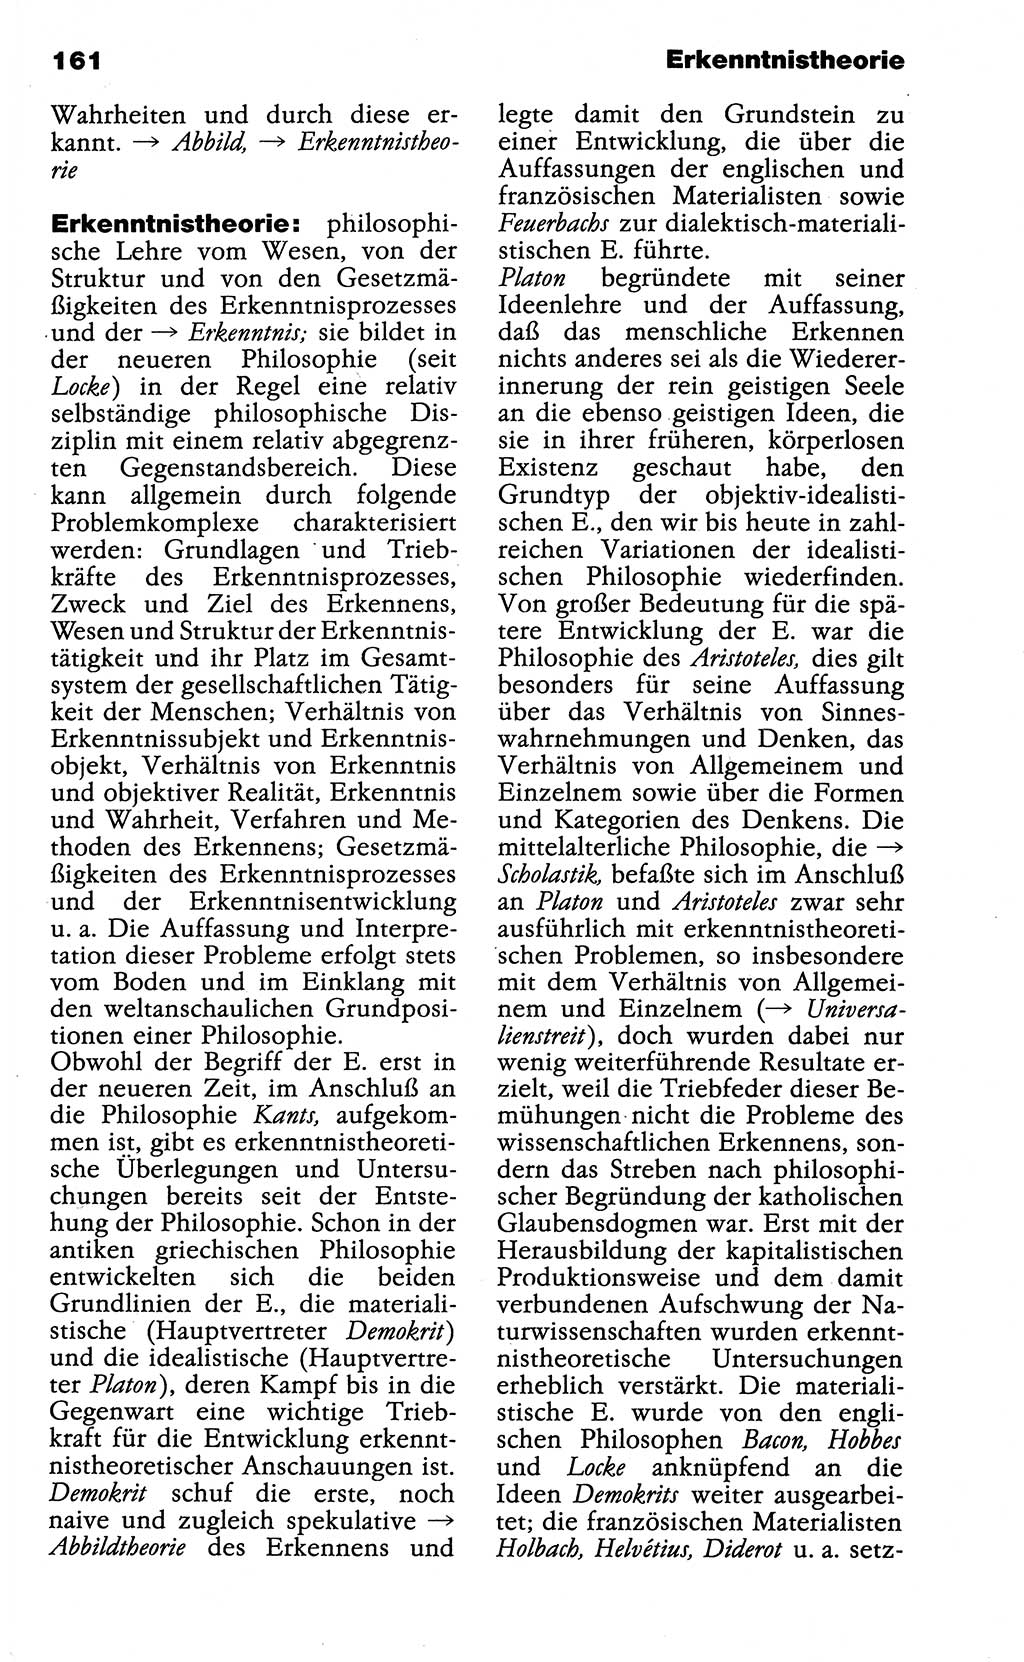 Wörterbuch der marxistisch-leninistischen Philosophie [Deutsche Demokratische Republik (DDR)] 1985, Seite 161 (Wb. ML Phil. DDR 1985, S. 161)